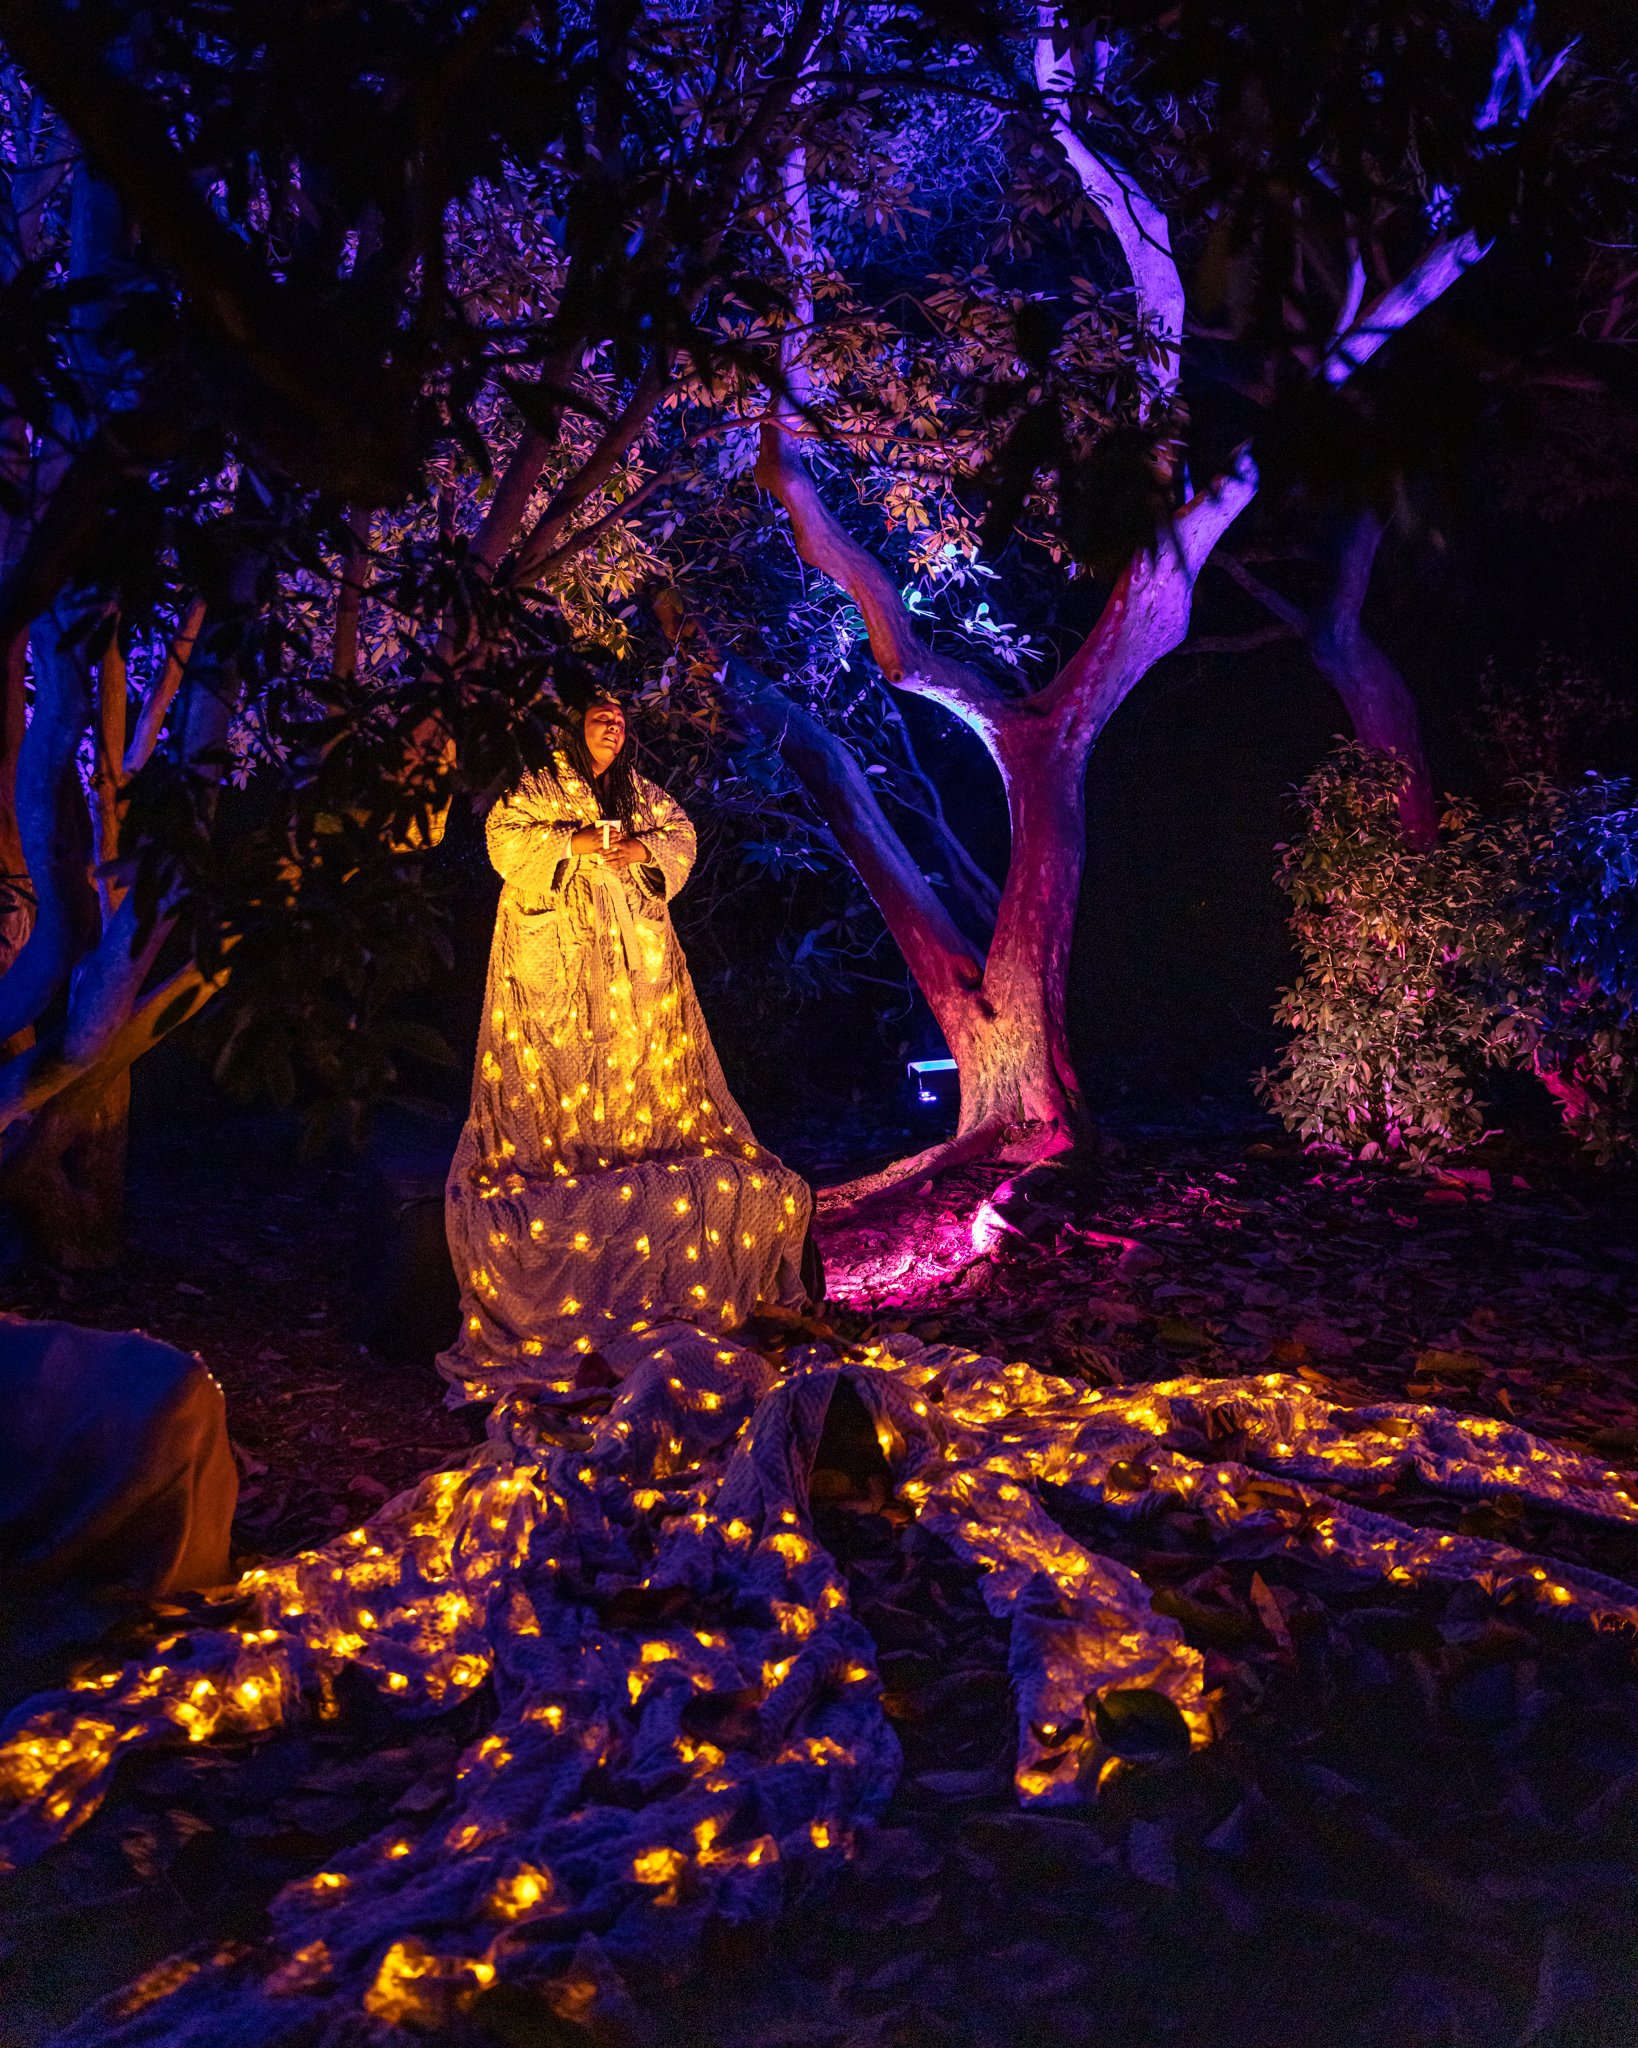 Illuminated garden photographer